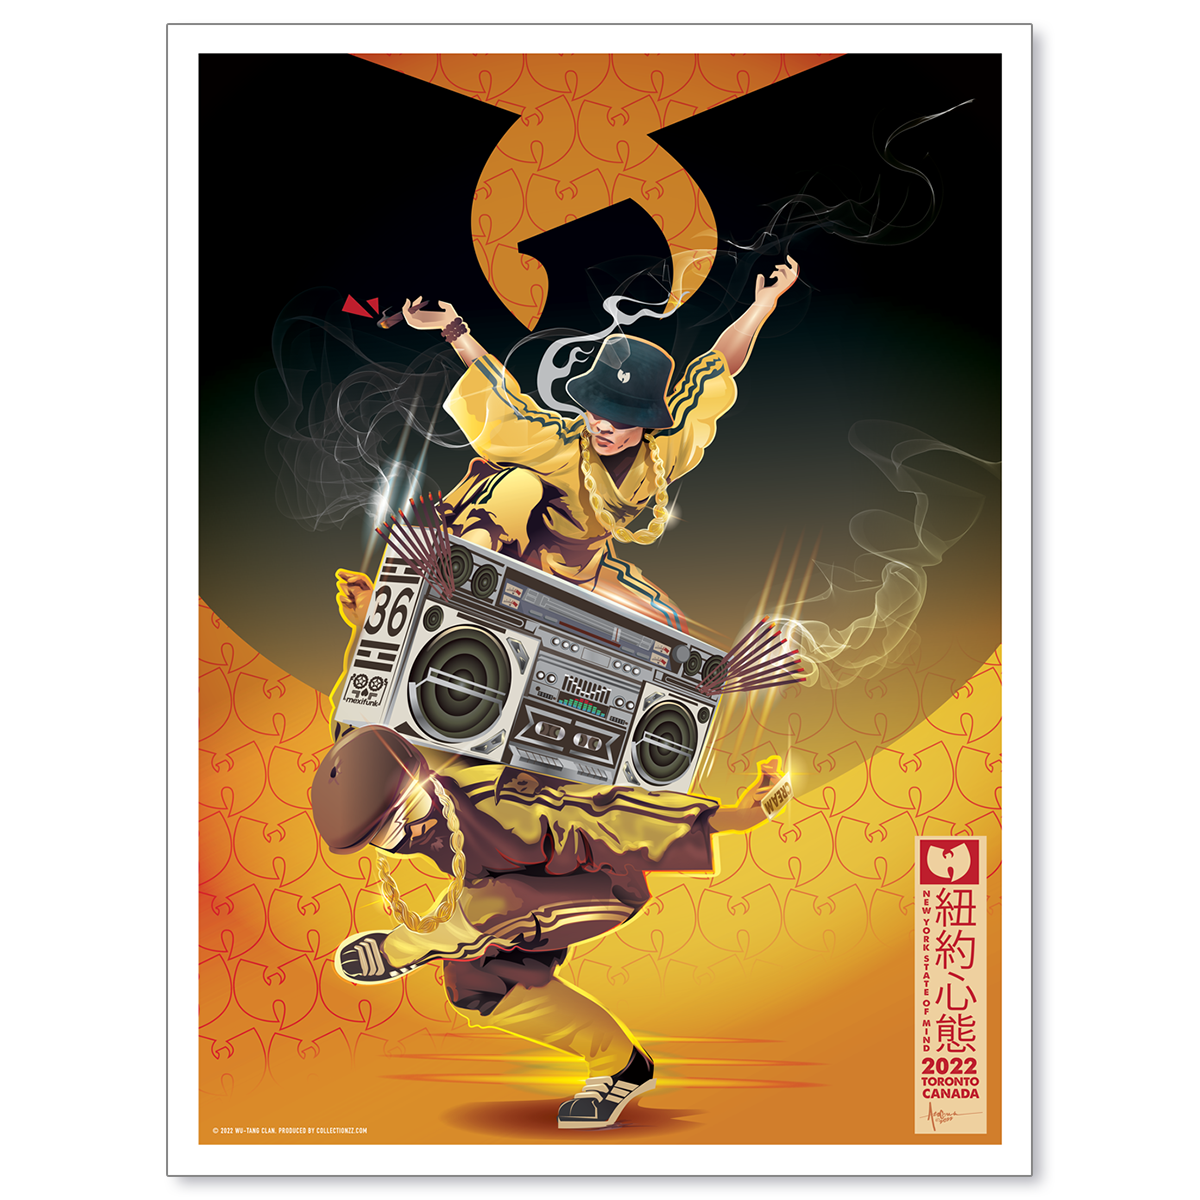 Wu-Tang Clan Toronto September 4, 2022 Print